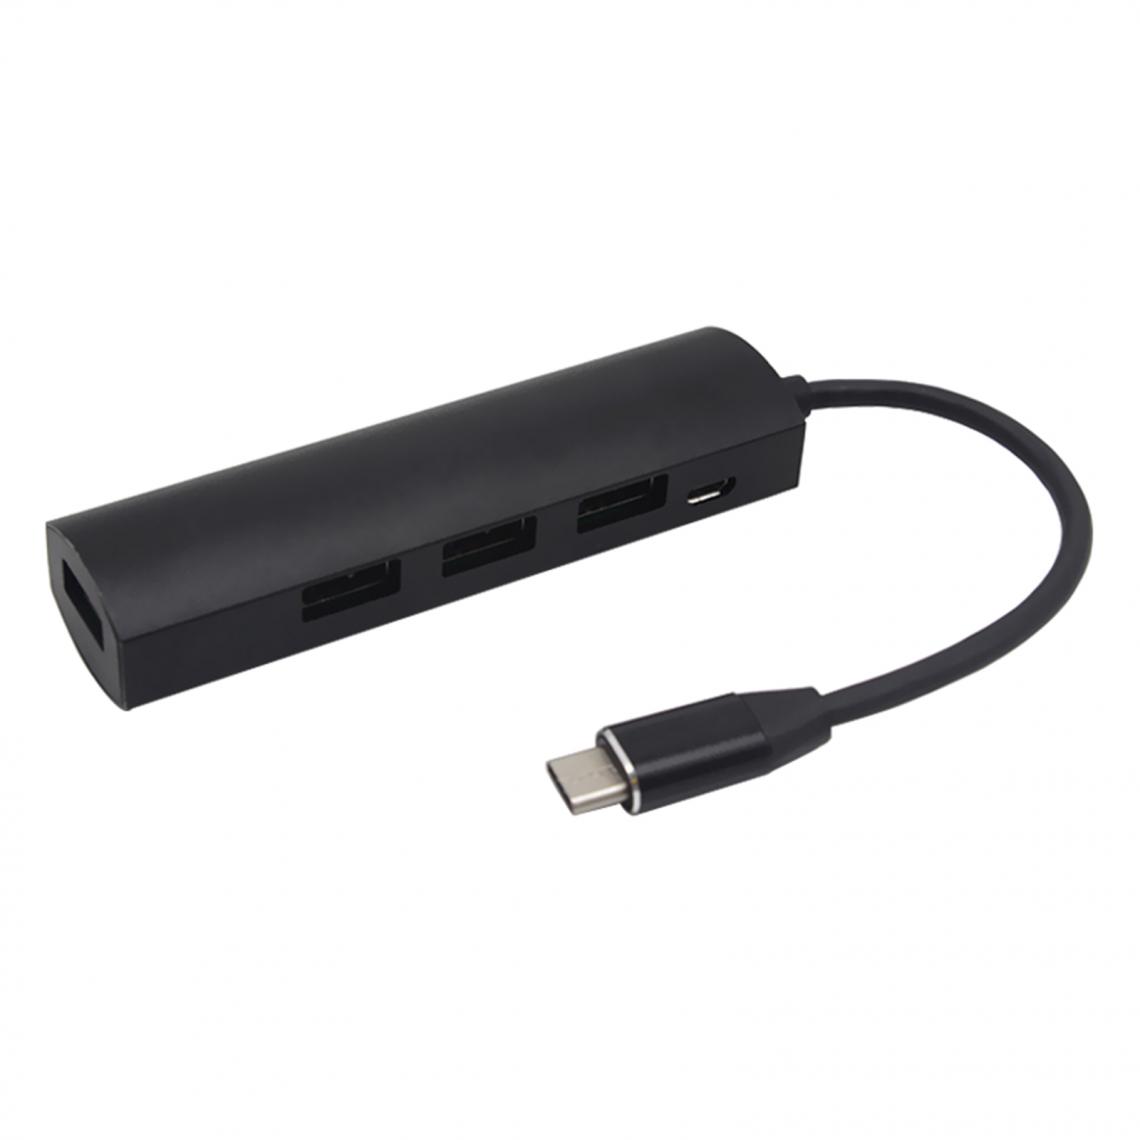 marque generique - Connecteurs Hub USB Type-C Câble Adaptateur USB 3.0 2.0 Pour MacBook Noir - Hub